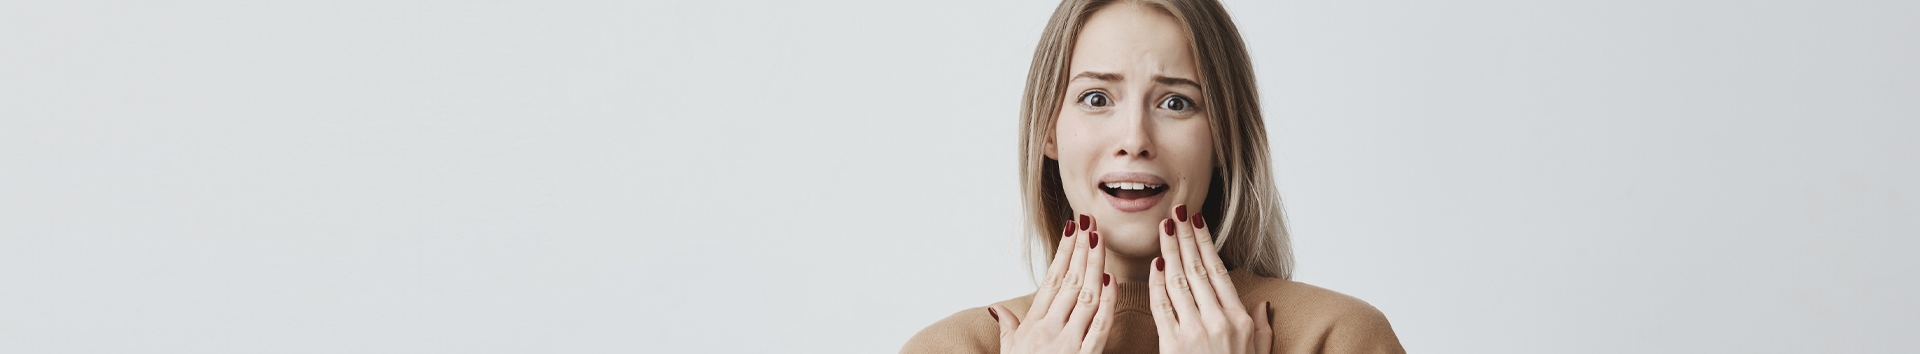 Como dentes mal cuidados podem acabar com a sua vida social (5 verdades nunca ditas)